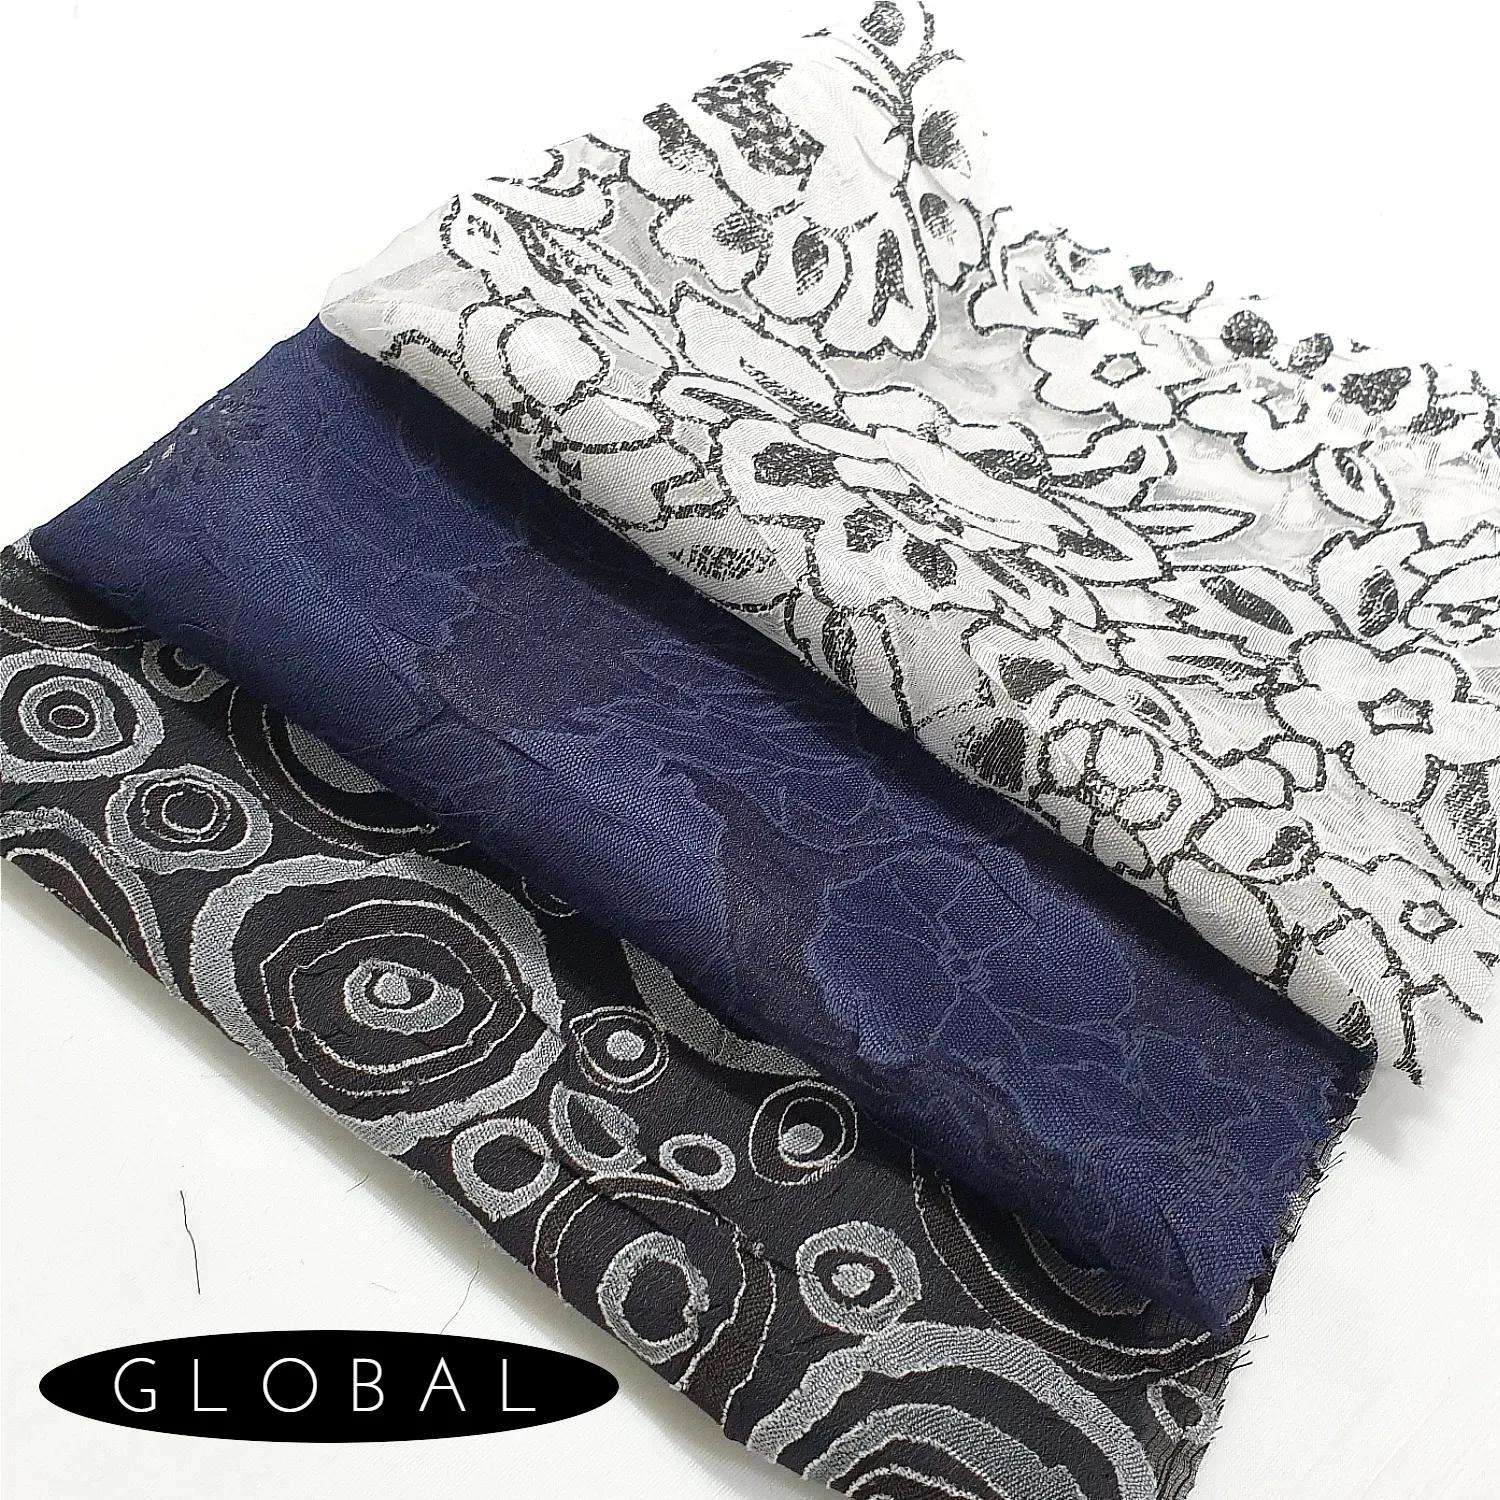 2021 Neues Design Mode Rayon Polyester Burnout Print Stoff Großhandel Fabrik Blumen stoff für Kleid Kleidungs stück Kleidung